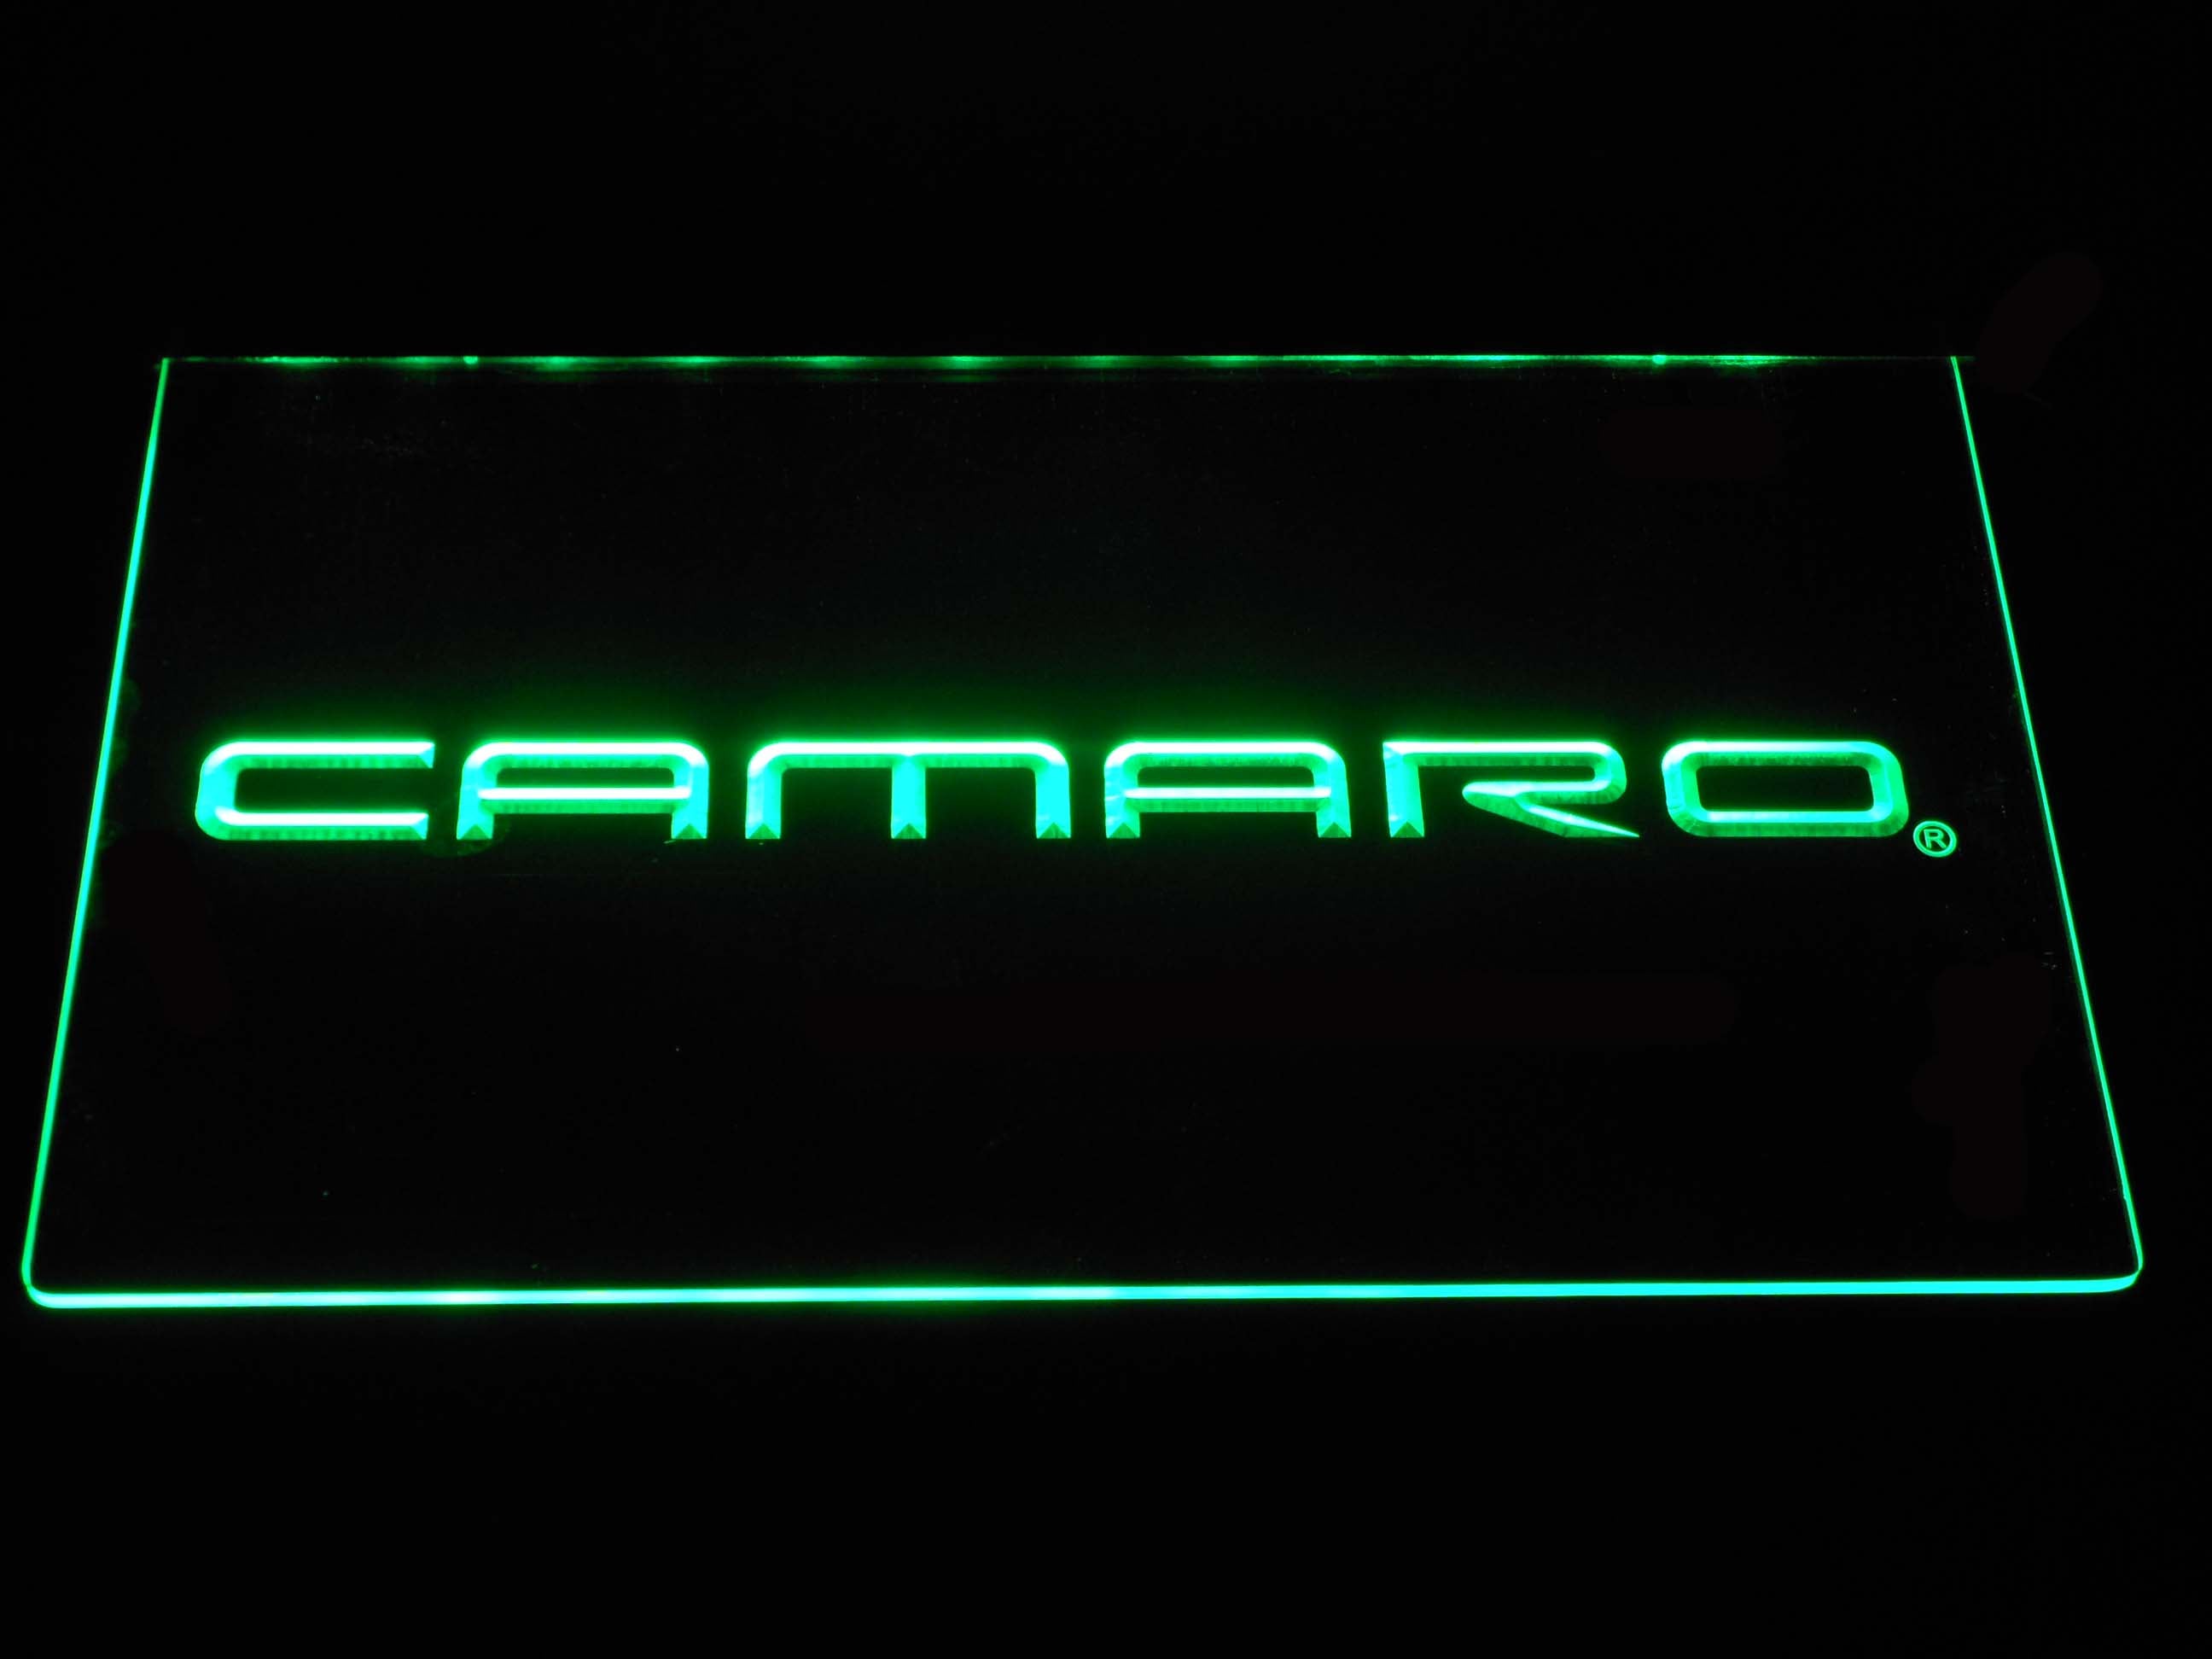 Chevrolet Camaro Neon Light LED Sign